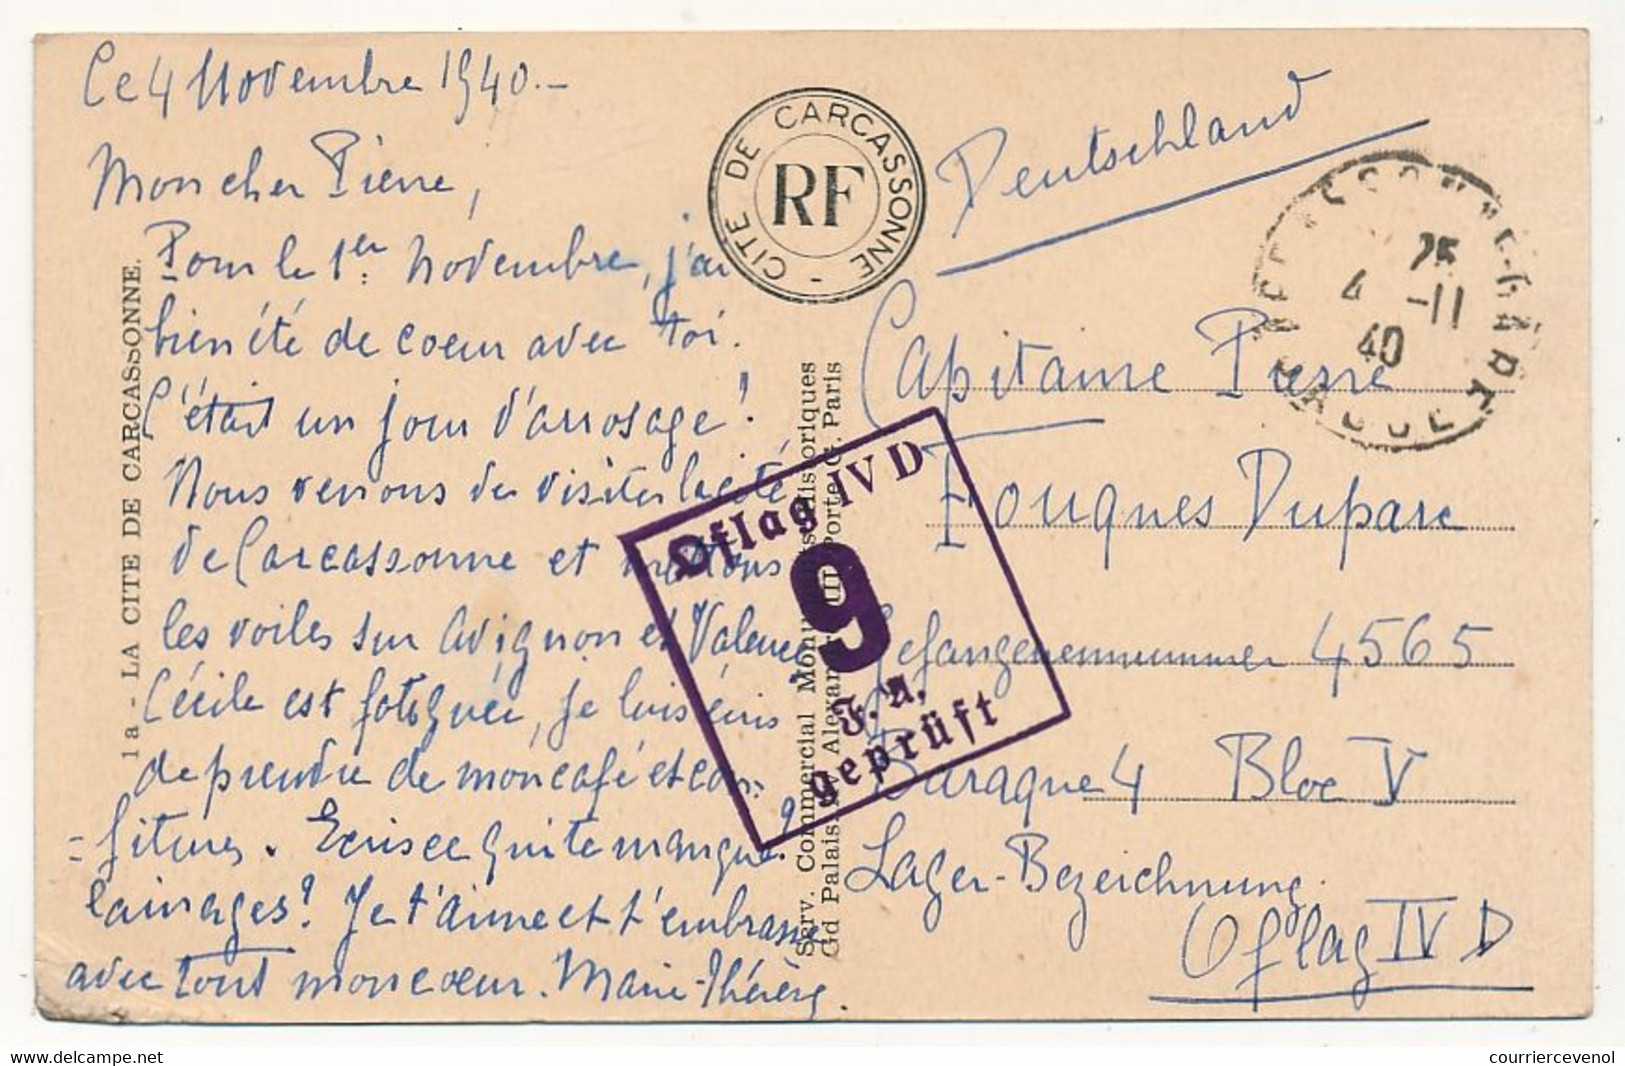 FRANCE - CPA illustrée ayant voyagé pour OFLAG IVD - Censeur Geprüft 9 - de Carcassonne 4/11/1940